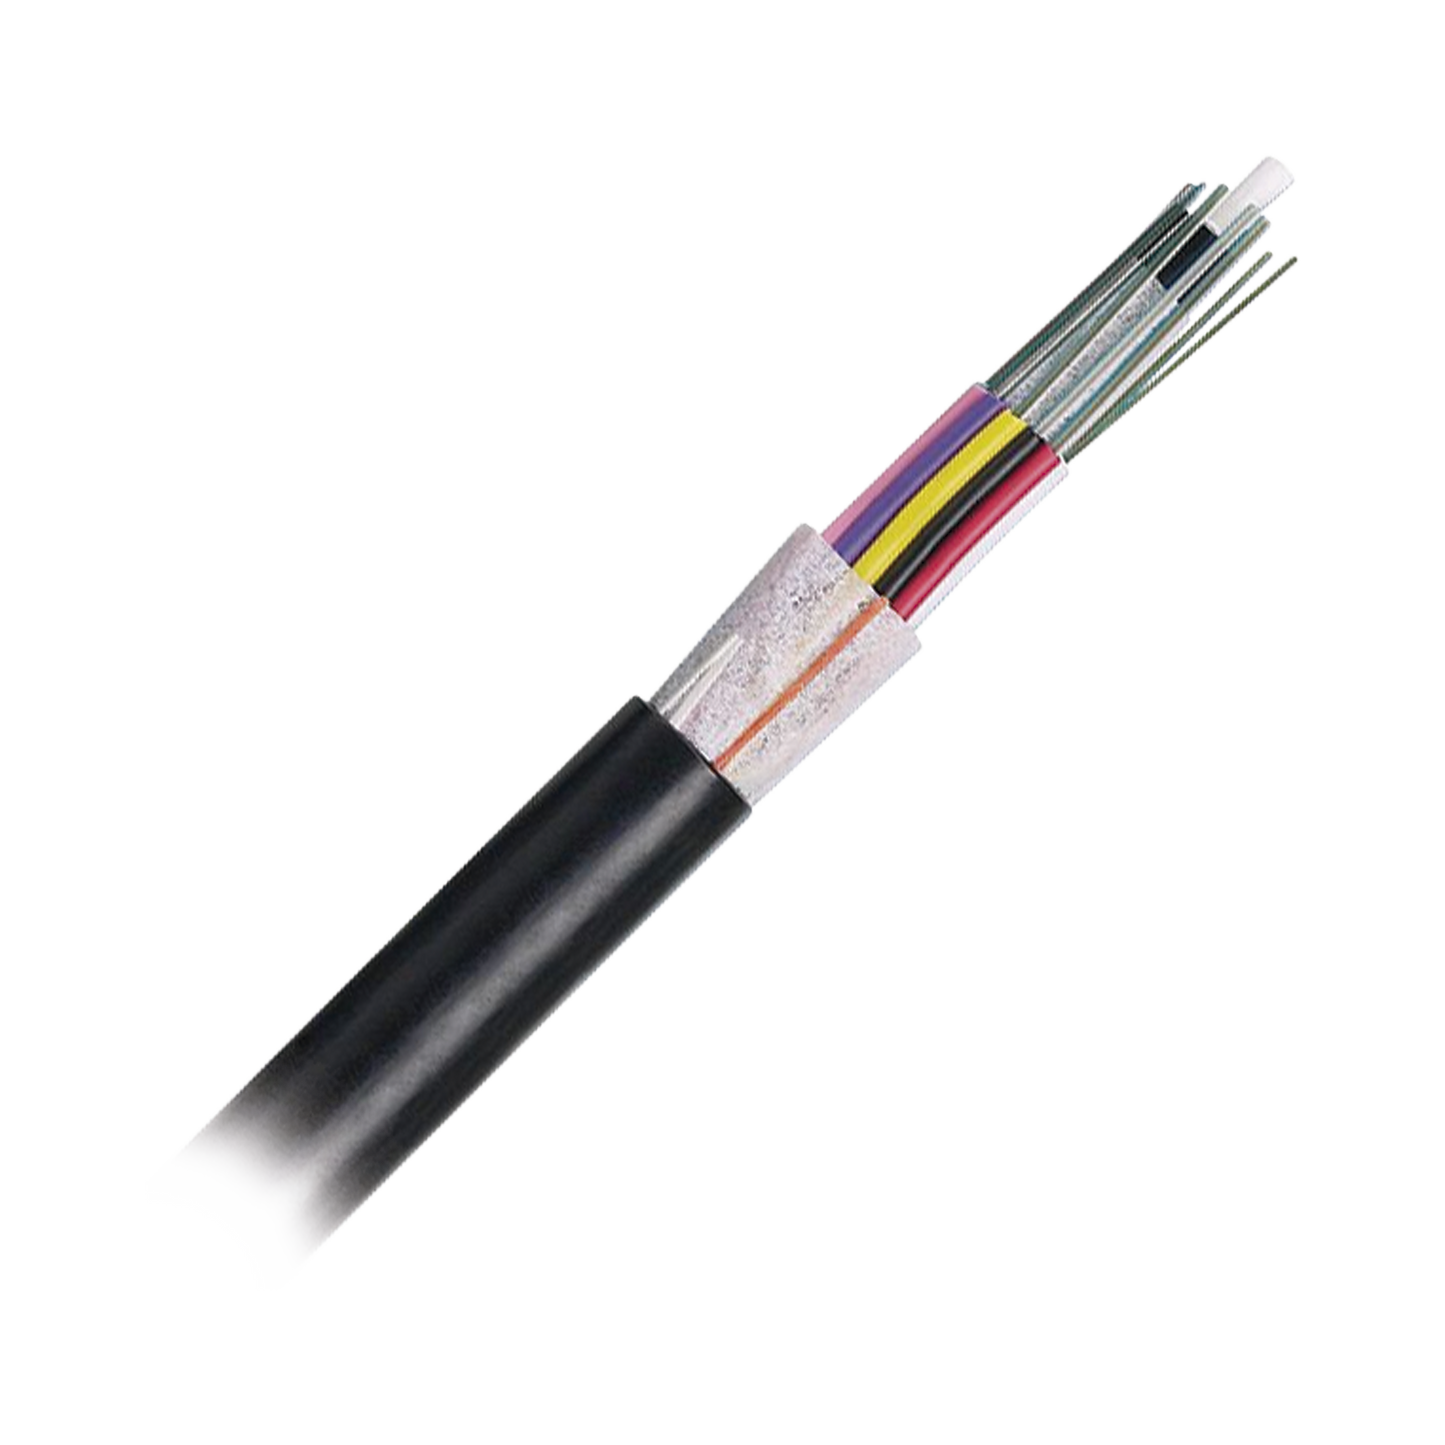 Cable de Fibra Óptica 12 hilos, OSP (Planta Externa), No Armada (Dieléctrica), MDPE (Polietileno de Media densidad), Multimodo OM3 50/125 Optimizada, Precio Por Metro